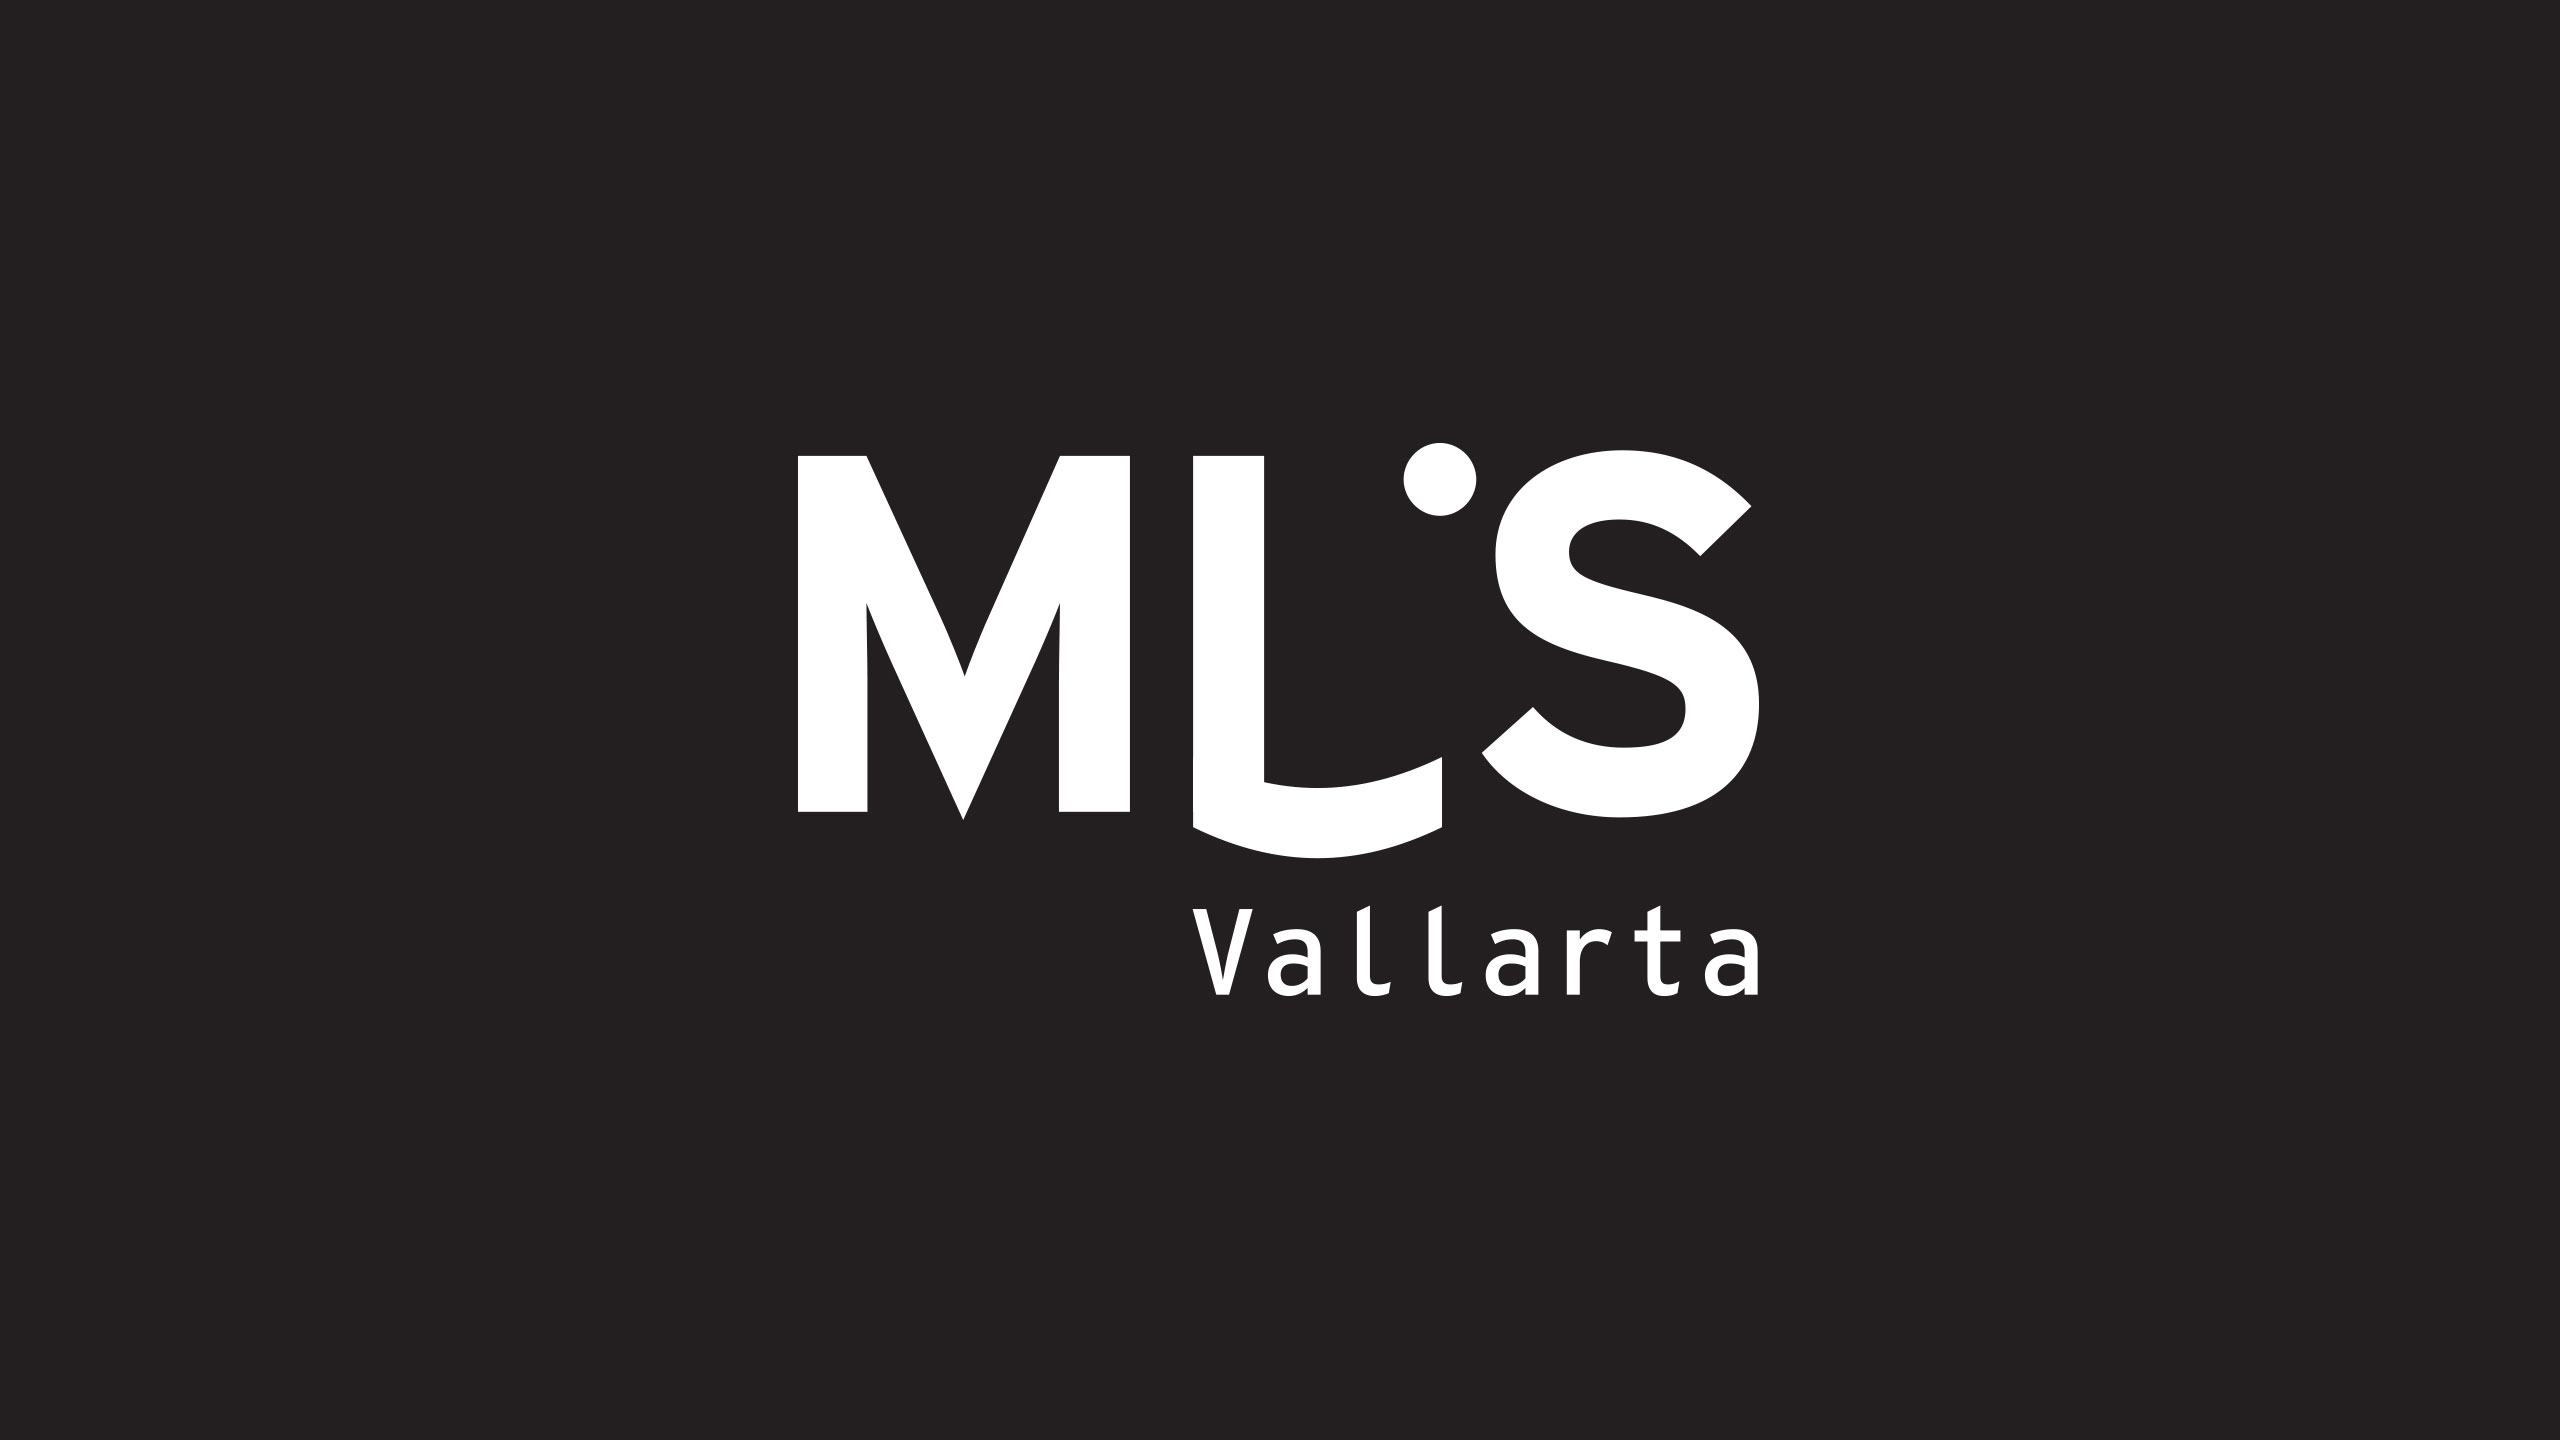 mls vallarta logo design